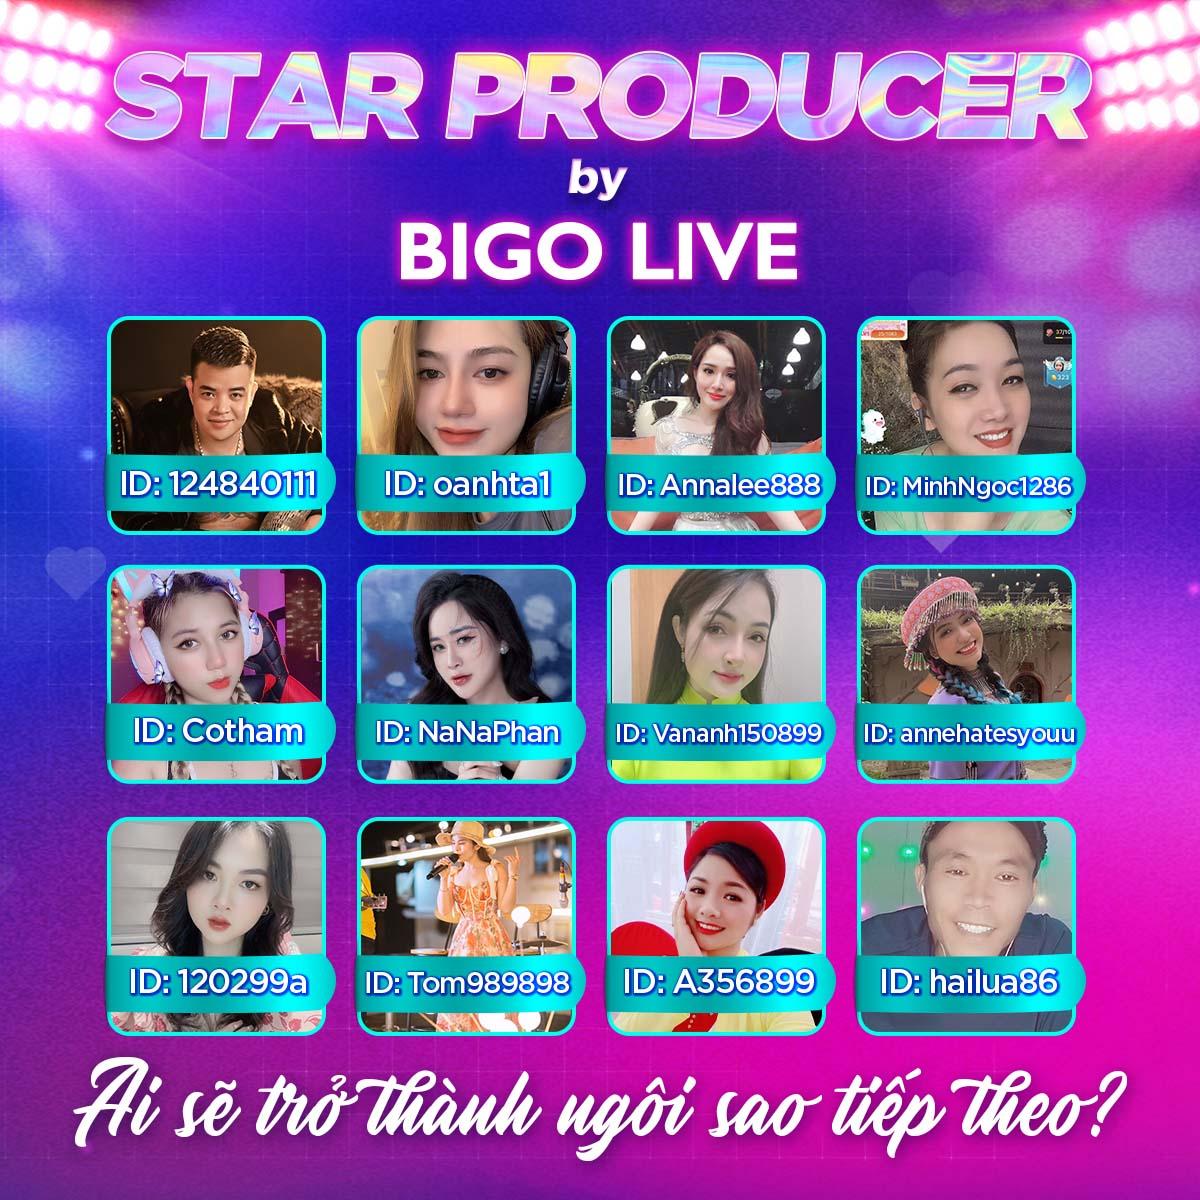 Thảo Trang và Đạt G trở thành giám khảo đêm chung kết Star Producer by Bigo Live - ảnh 2